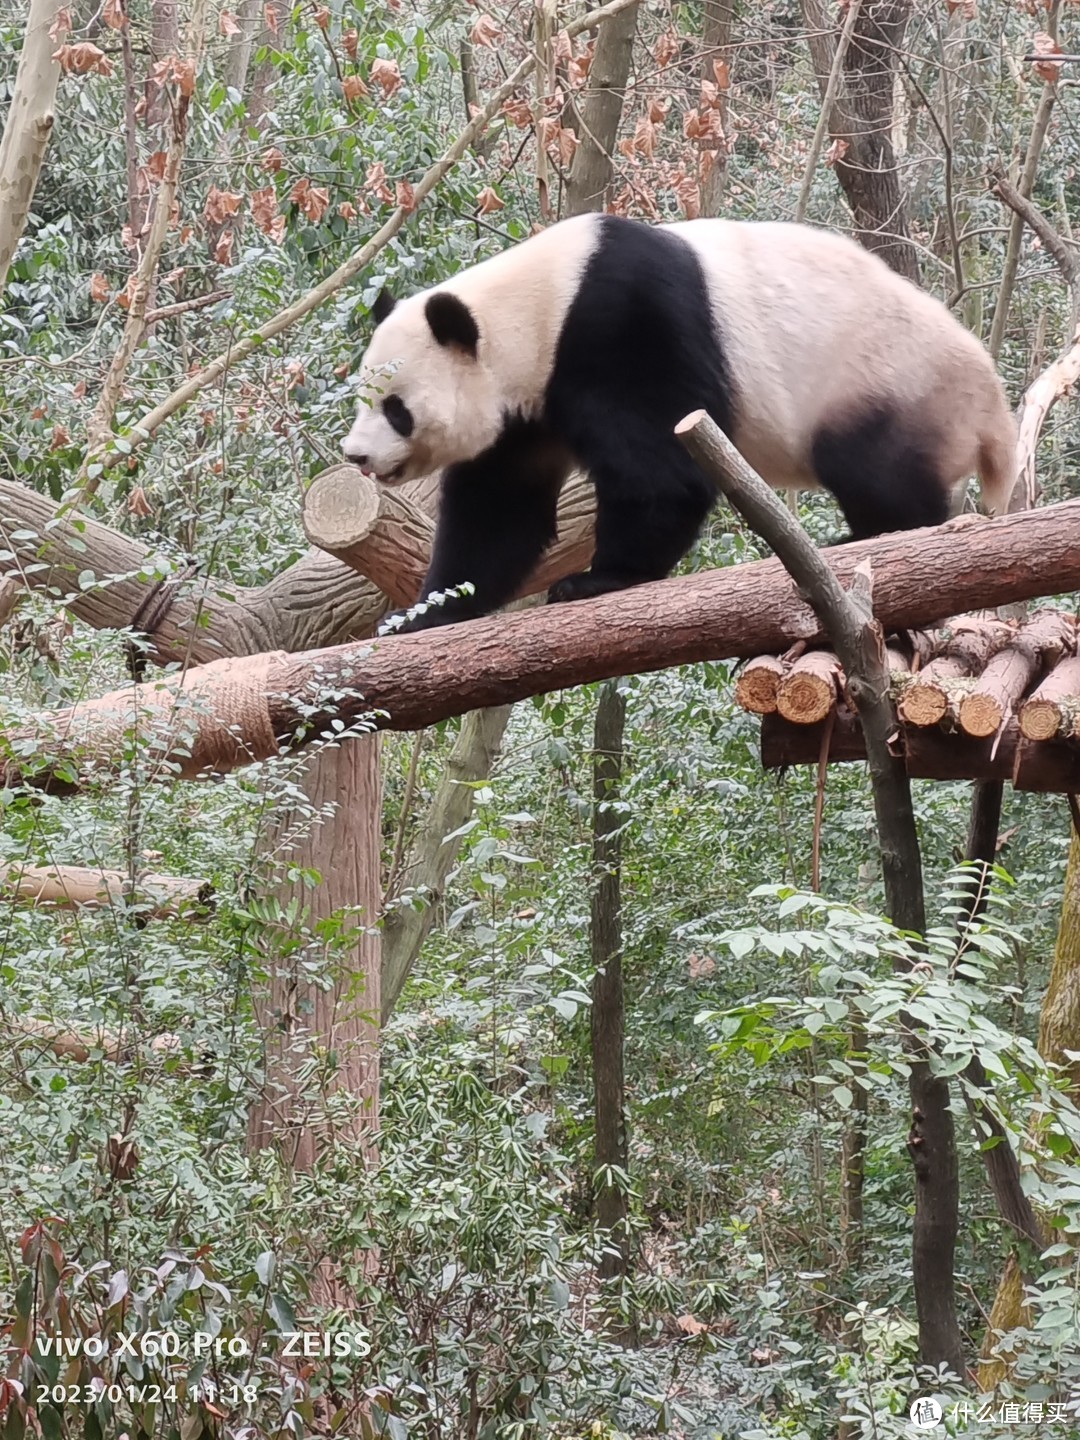 成都大熊猫繁育研究基地-春节成都行孩子最满意的一站